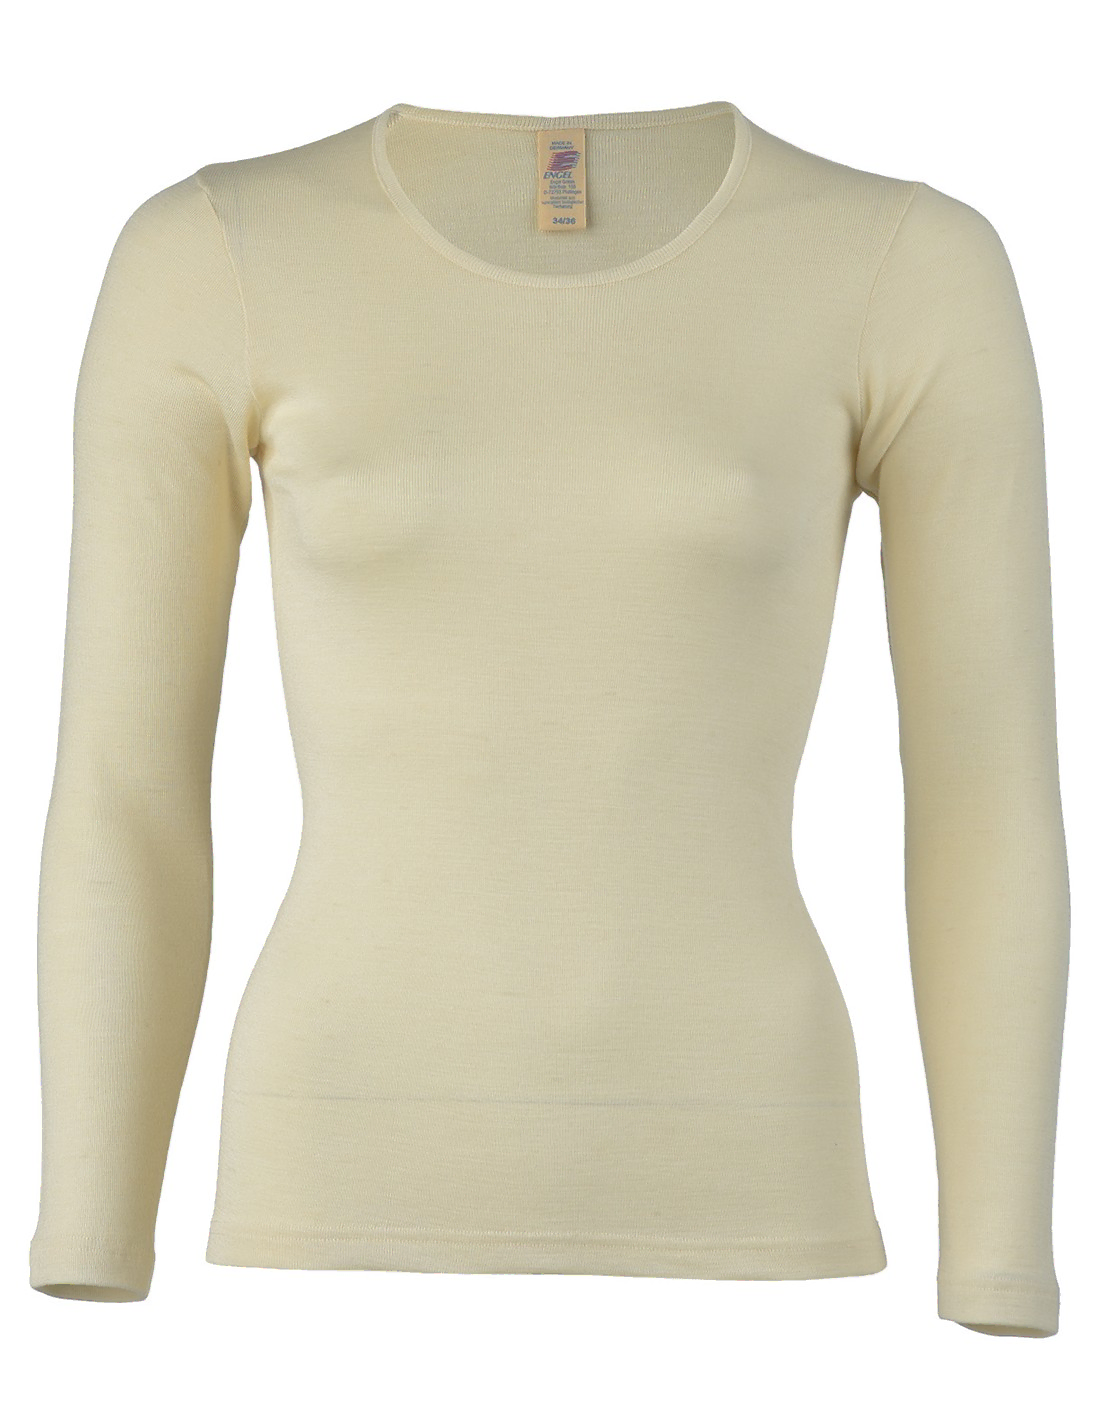 Image of Dames Shirt Lange Mouw Zijde Wol Engel Natur, Kleur Gebroken wit, Maat 46/48 - Extra Large